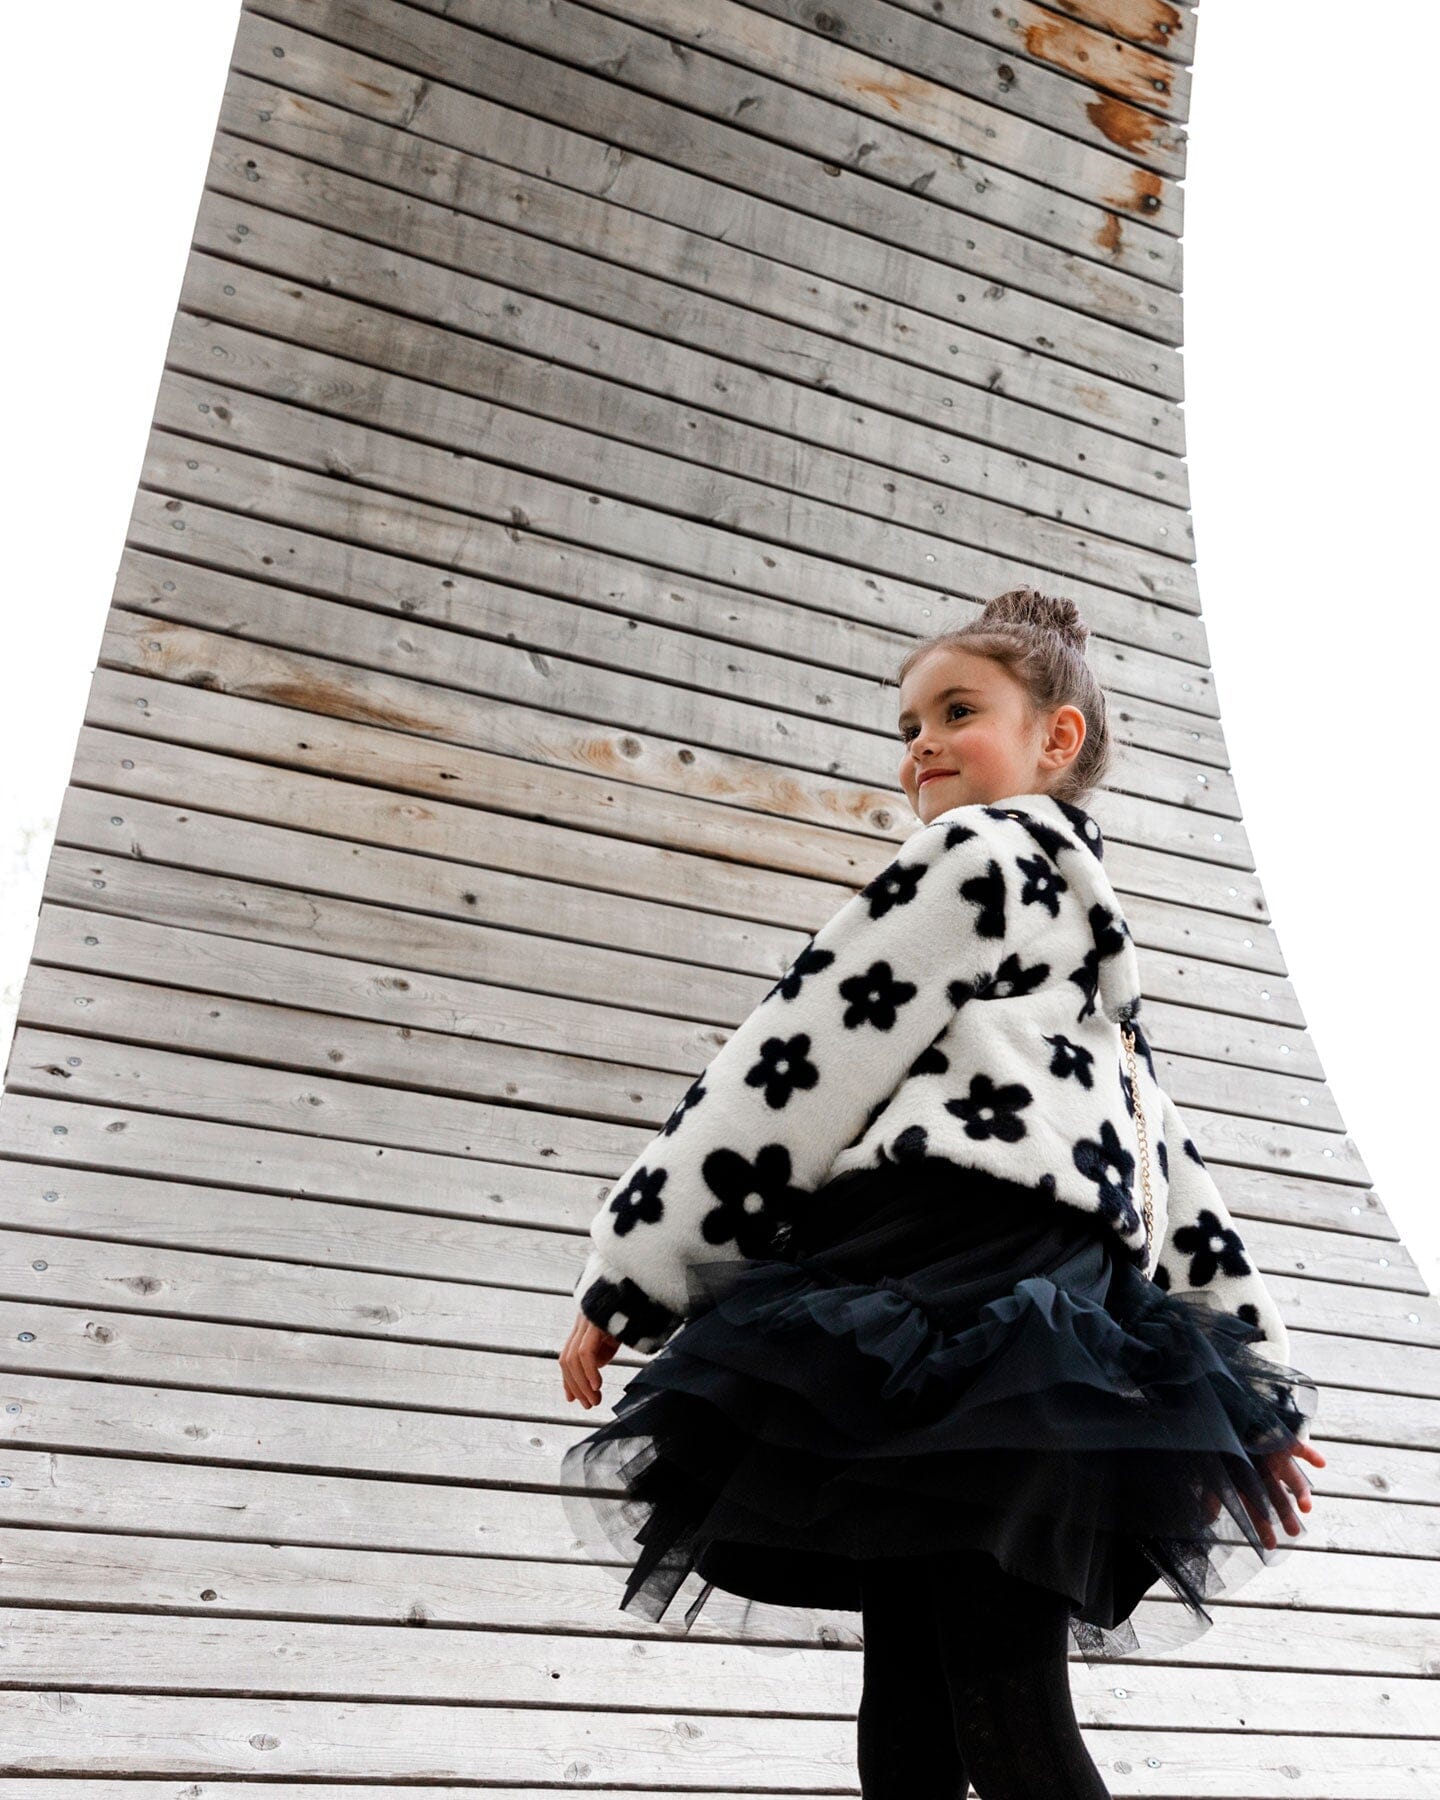 Bi-Material Sleeveless Velvet Dress With Tulle Skirt Black - F20O98_999